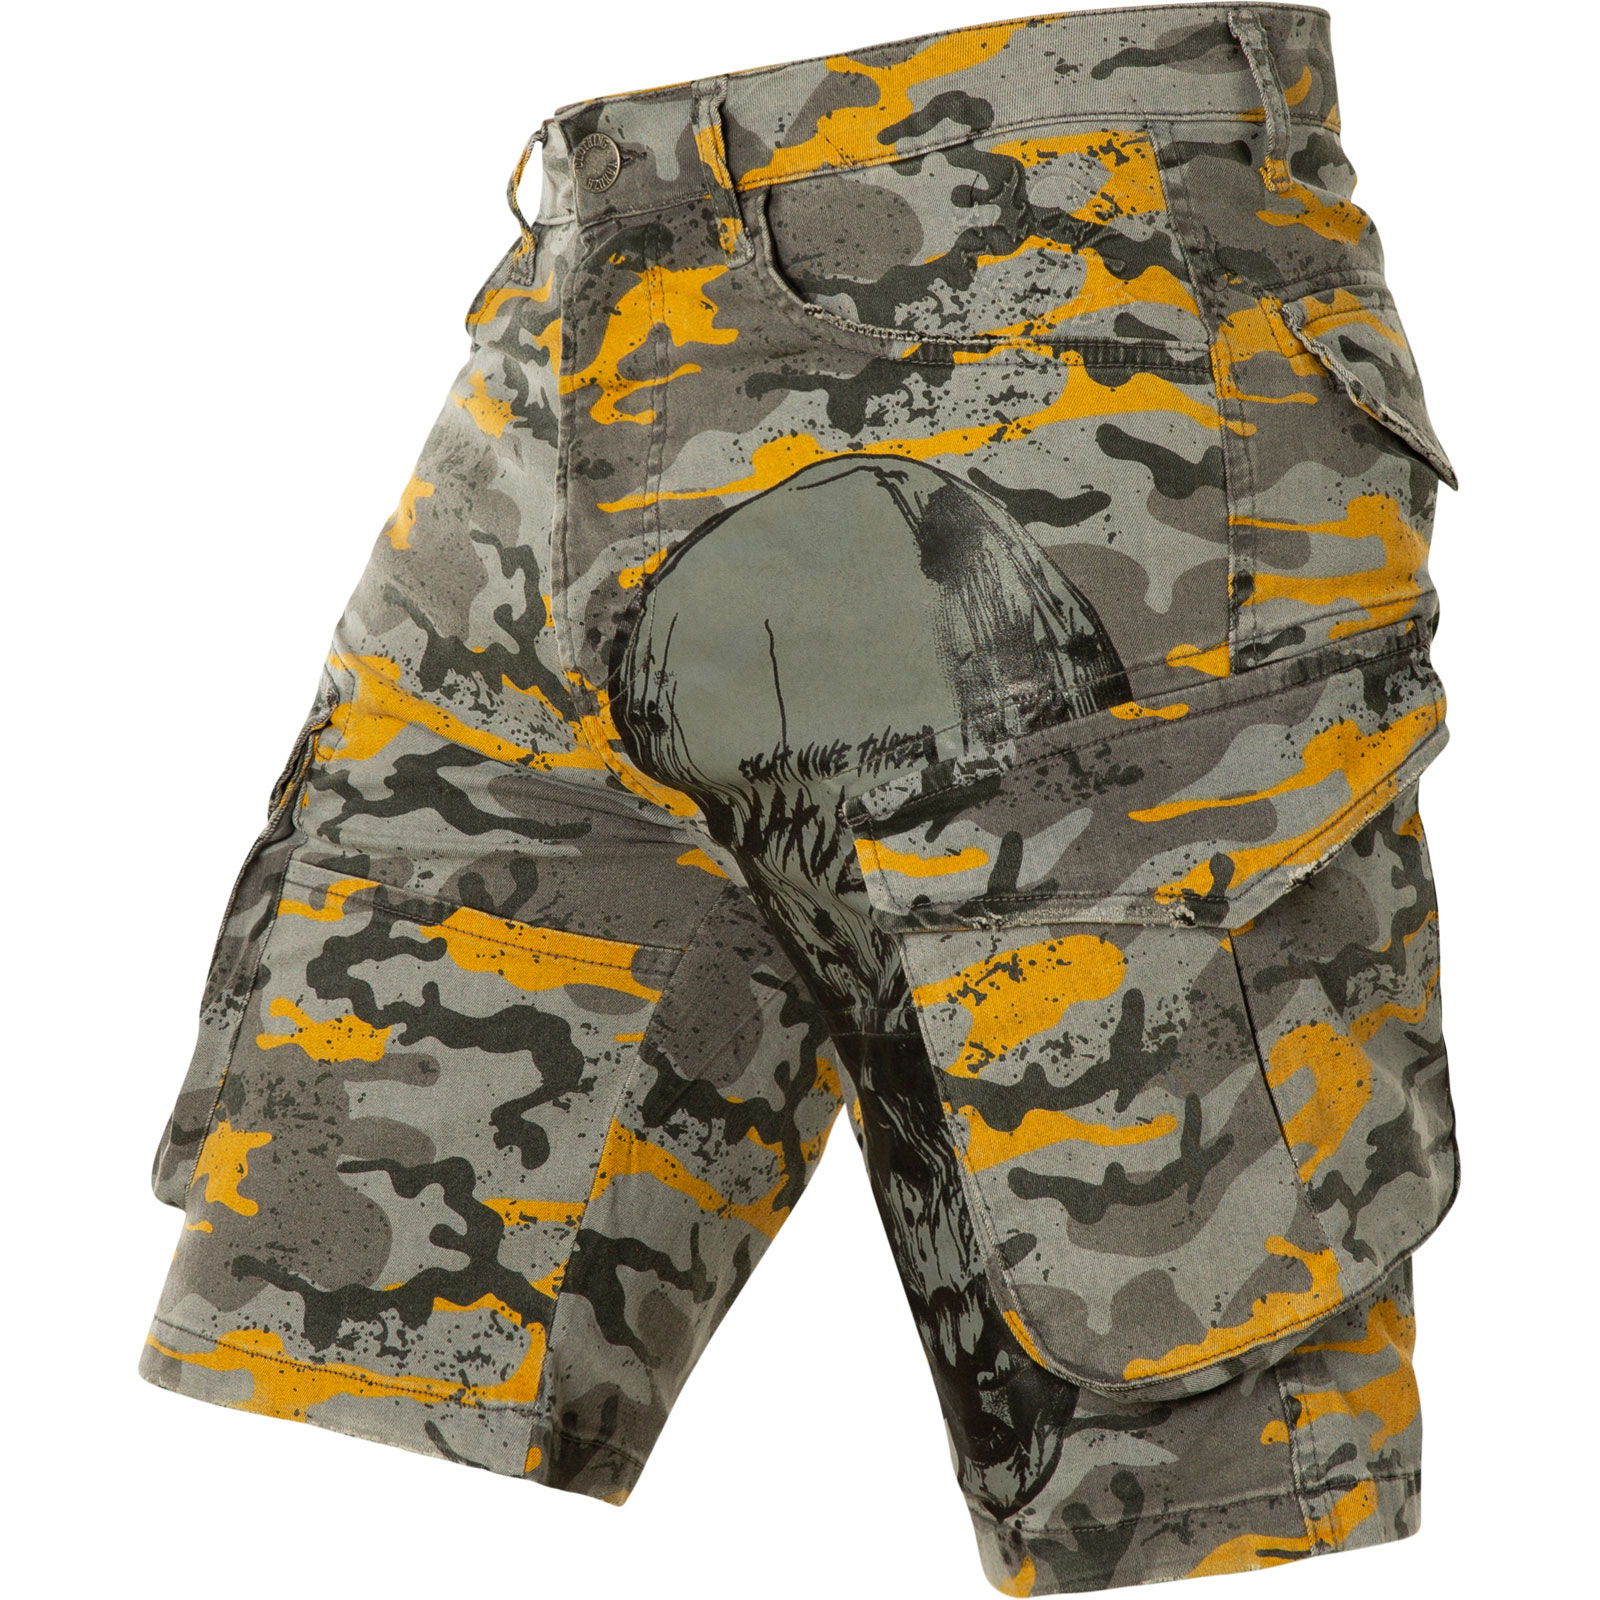 YAKUZA Knuckle Skull Cargo Shorts CSB-18022 Camouflage Yellow